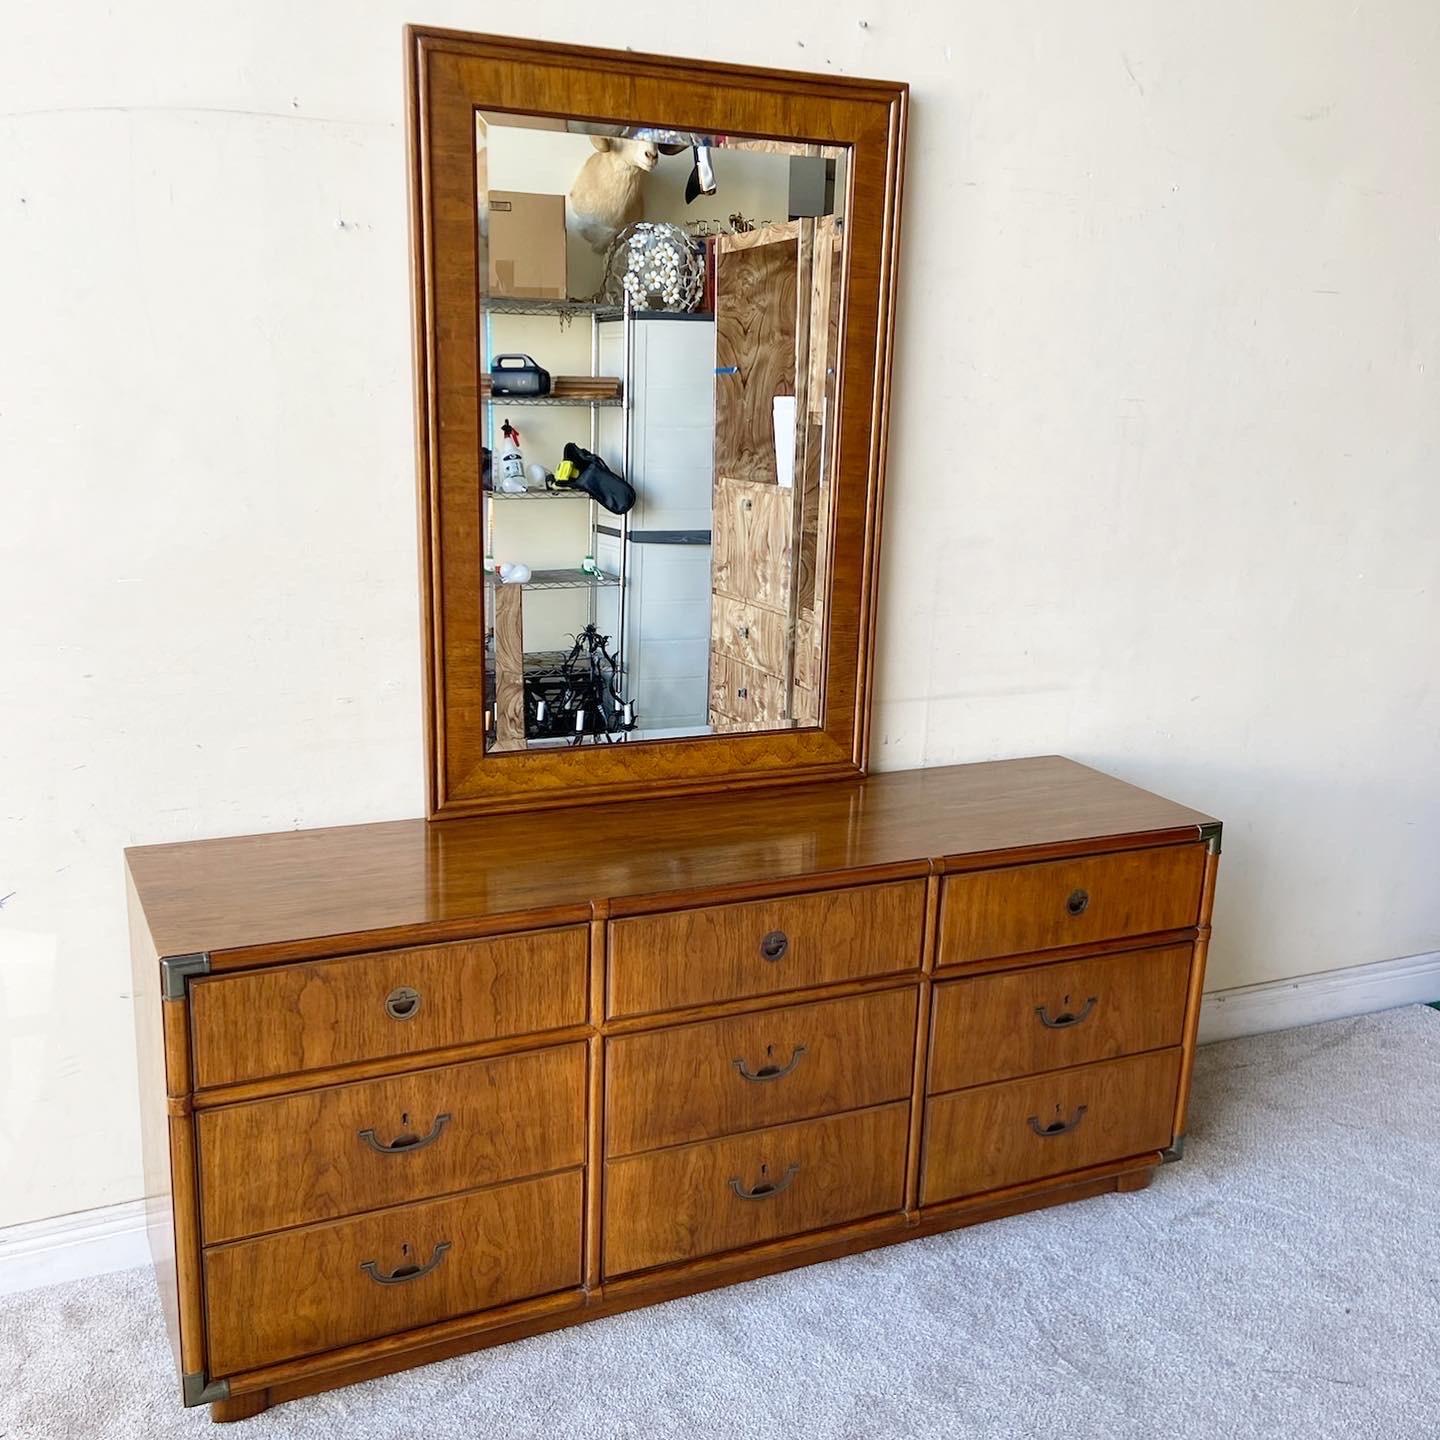 Incroyable commode de campagne Accolade vintage avec miroir par Drexel Heritage. Il comporte 9 tiroirs spacieux avec des poignées en laiton incrusté. La commode est sur roulettes.

Le miroir mesure 33,75